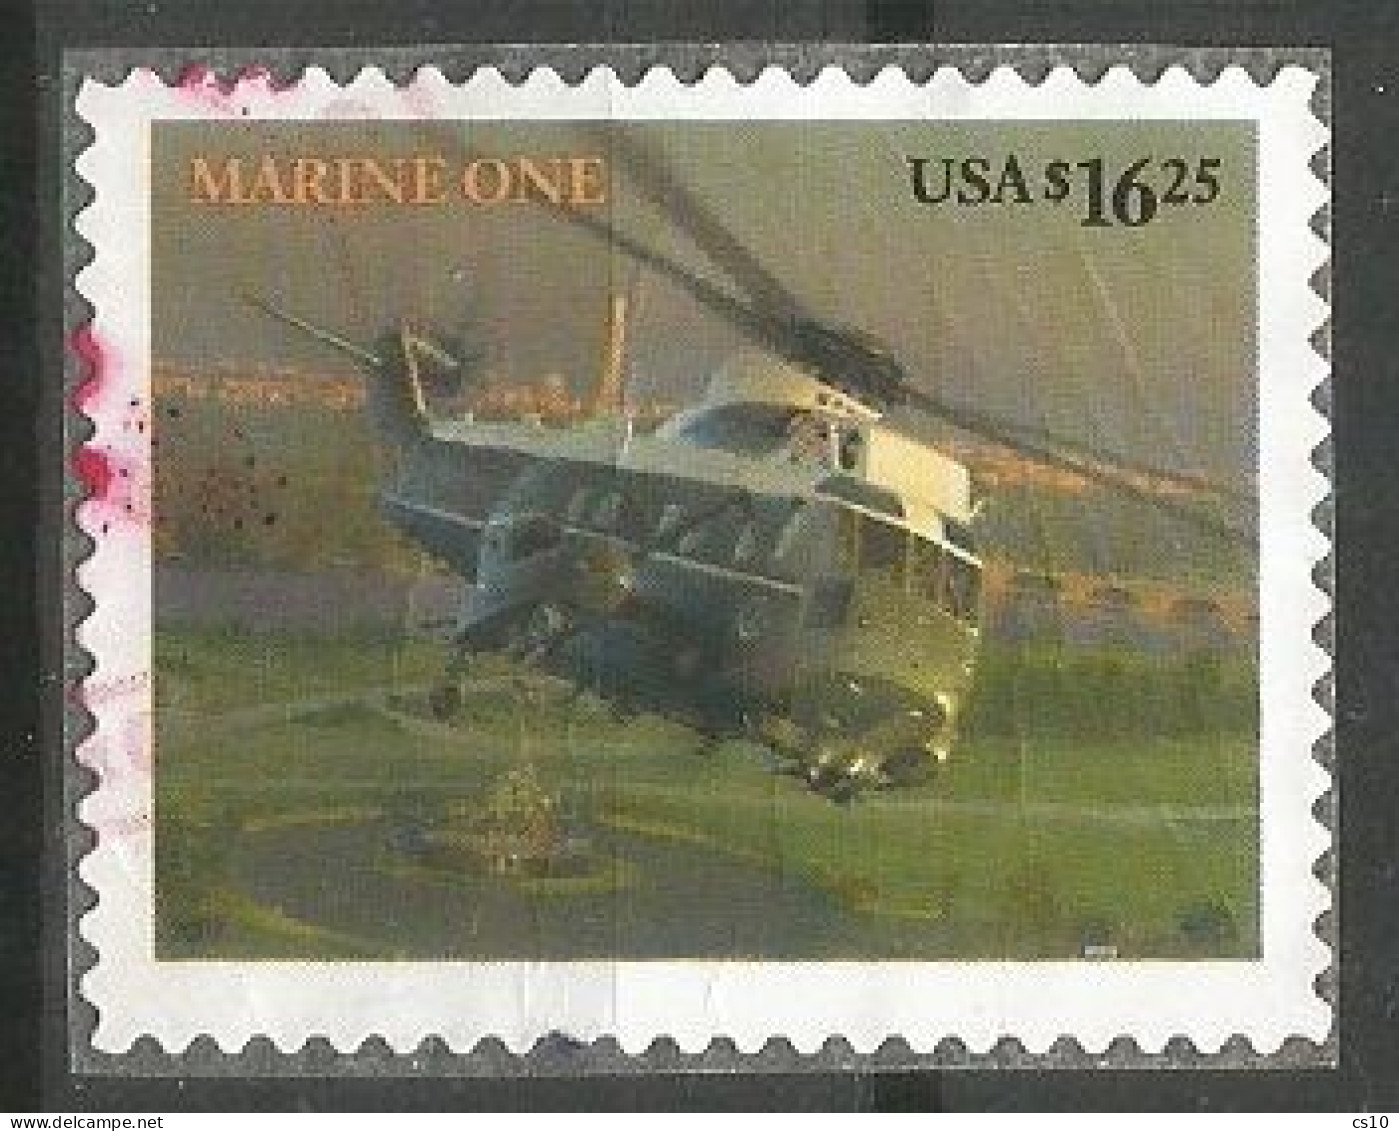 USA 2007 HV Express Mail $ 17.95 President Helicopter Marine One SC. # 4145 In VFU Condition - Sammlungen